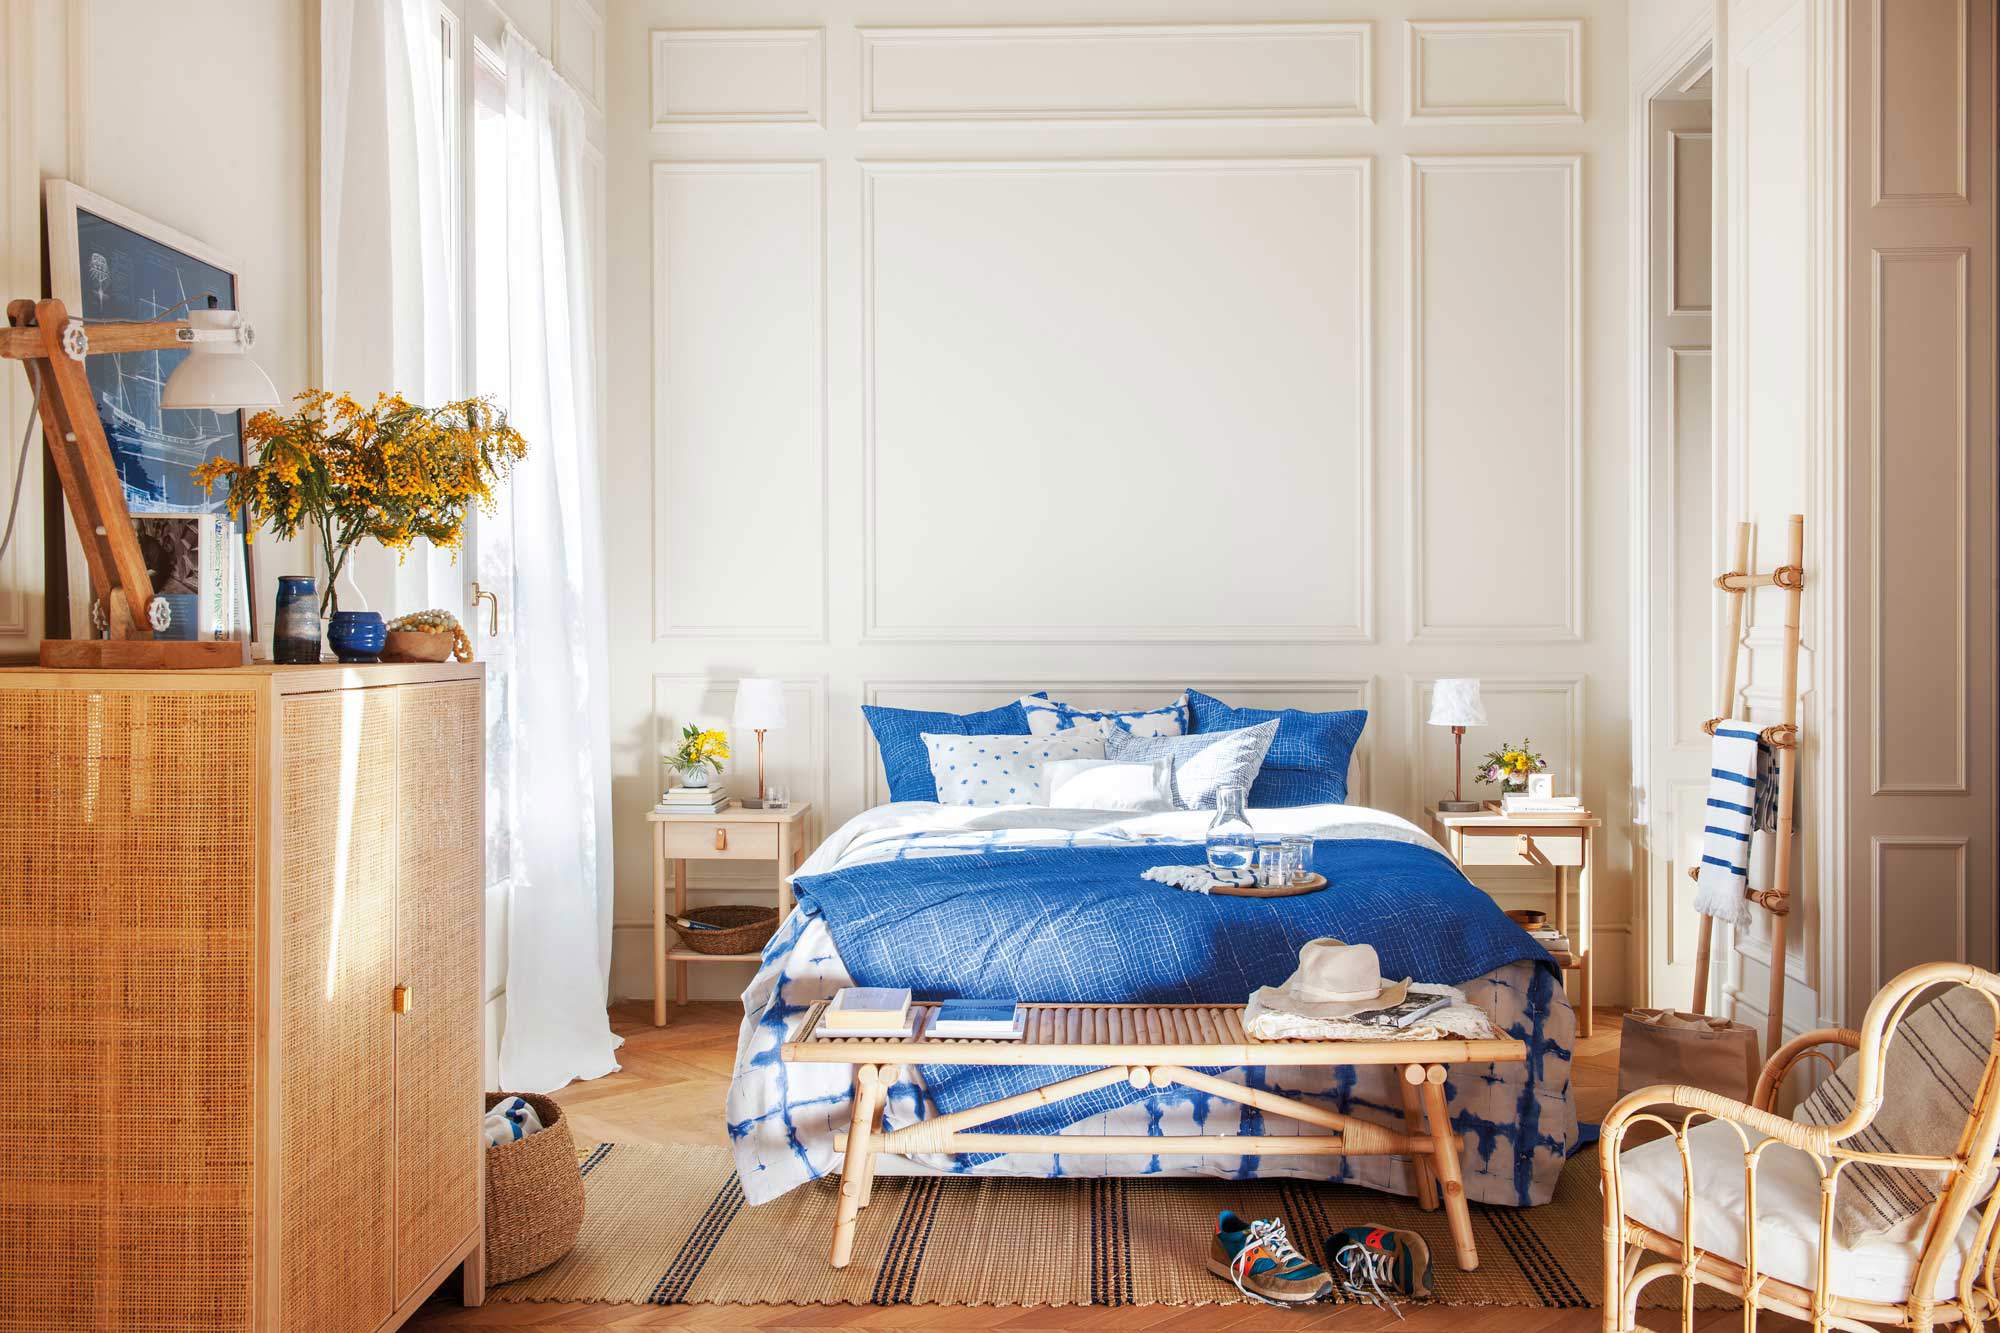 Dormitorio con muebles de madera y fibra y ropa de cama en azul y blanco.